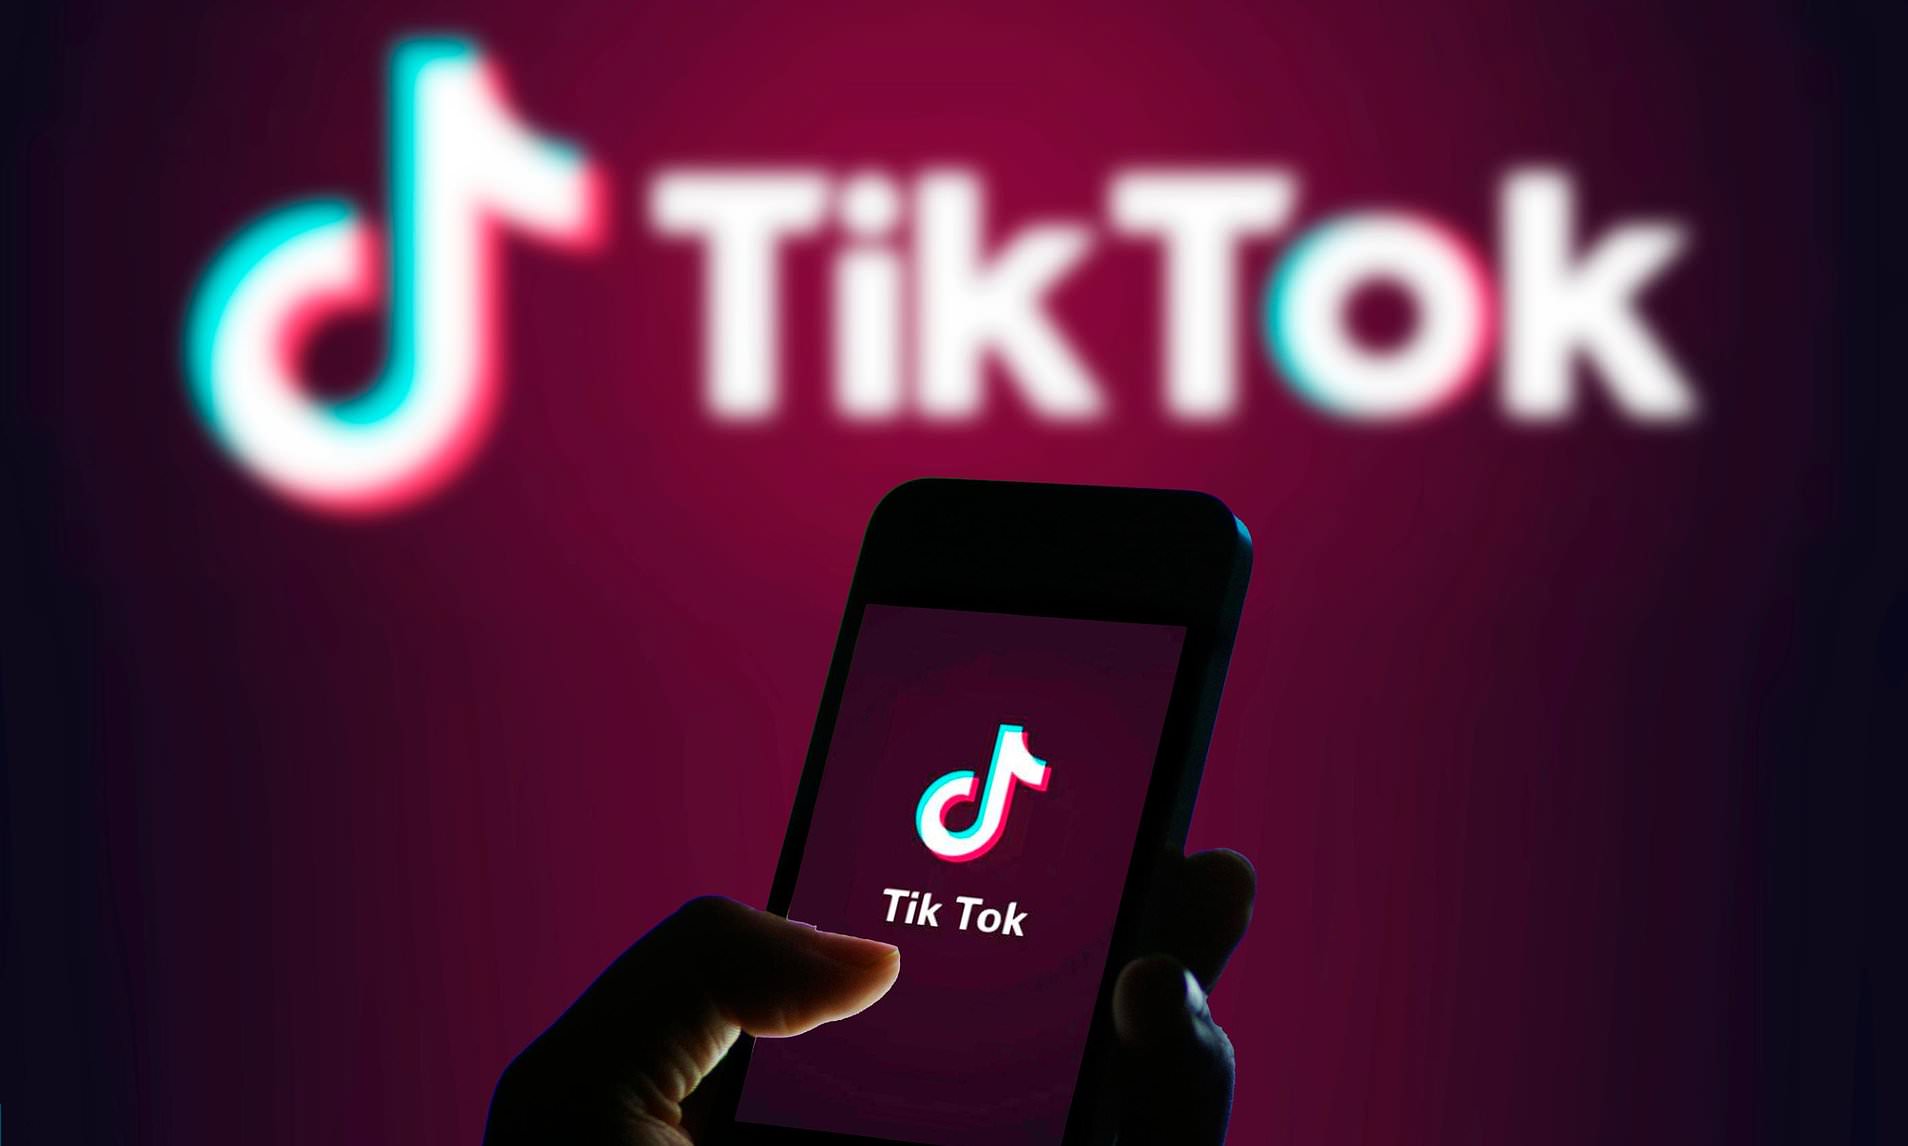  15 Ευρωπαϊκές χώρες καταγγέλλουν το TikTok